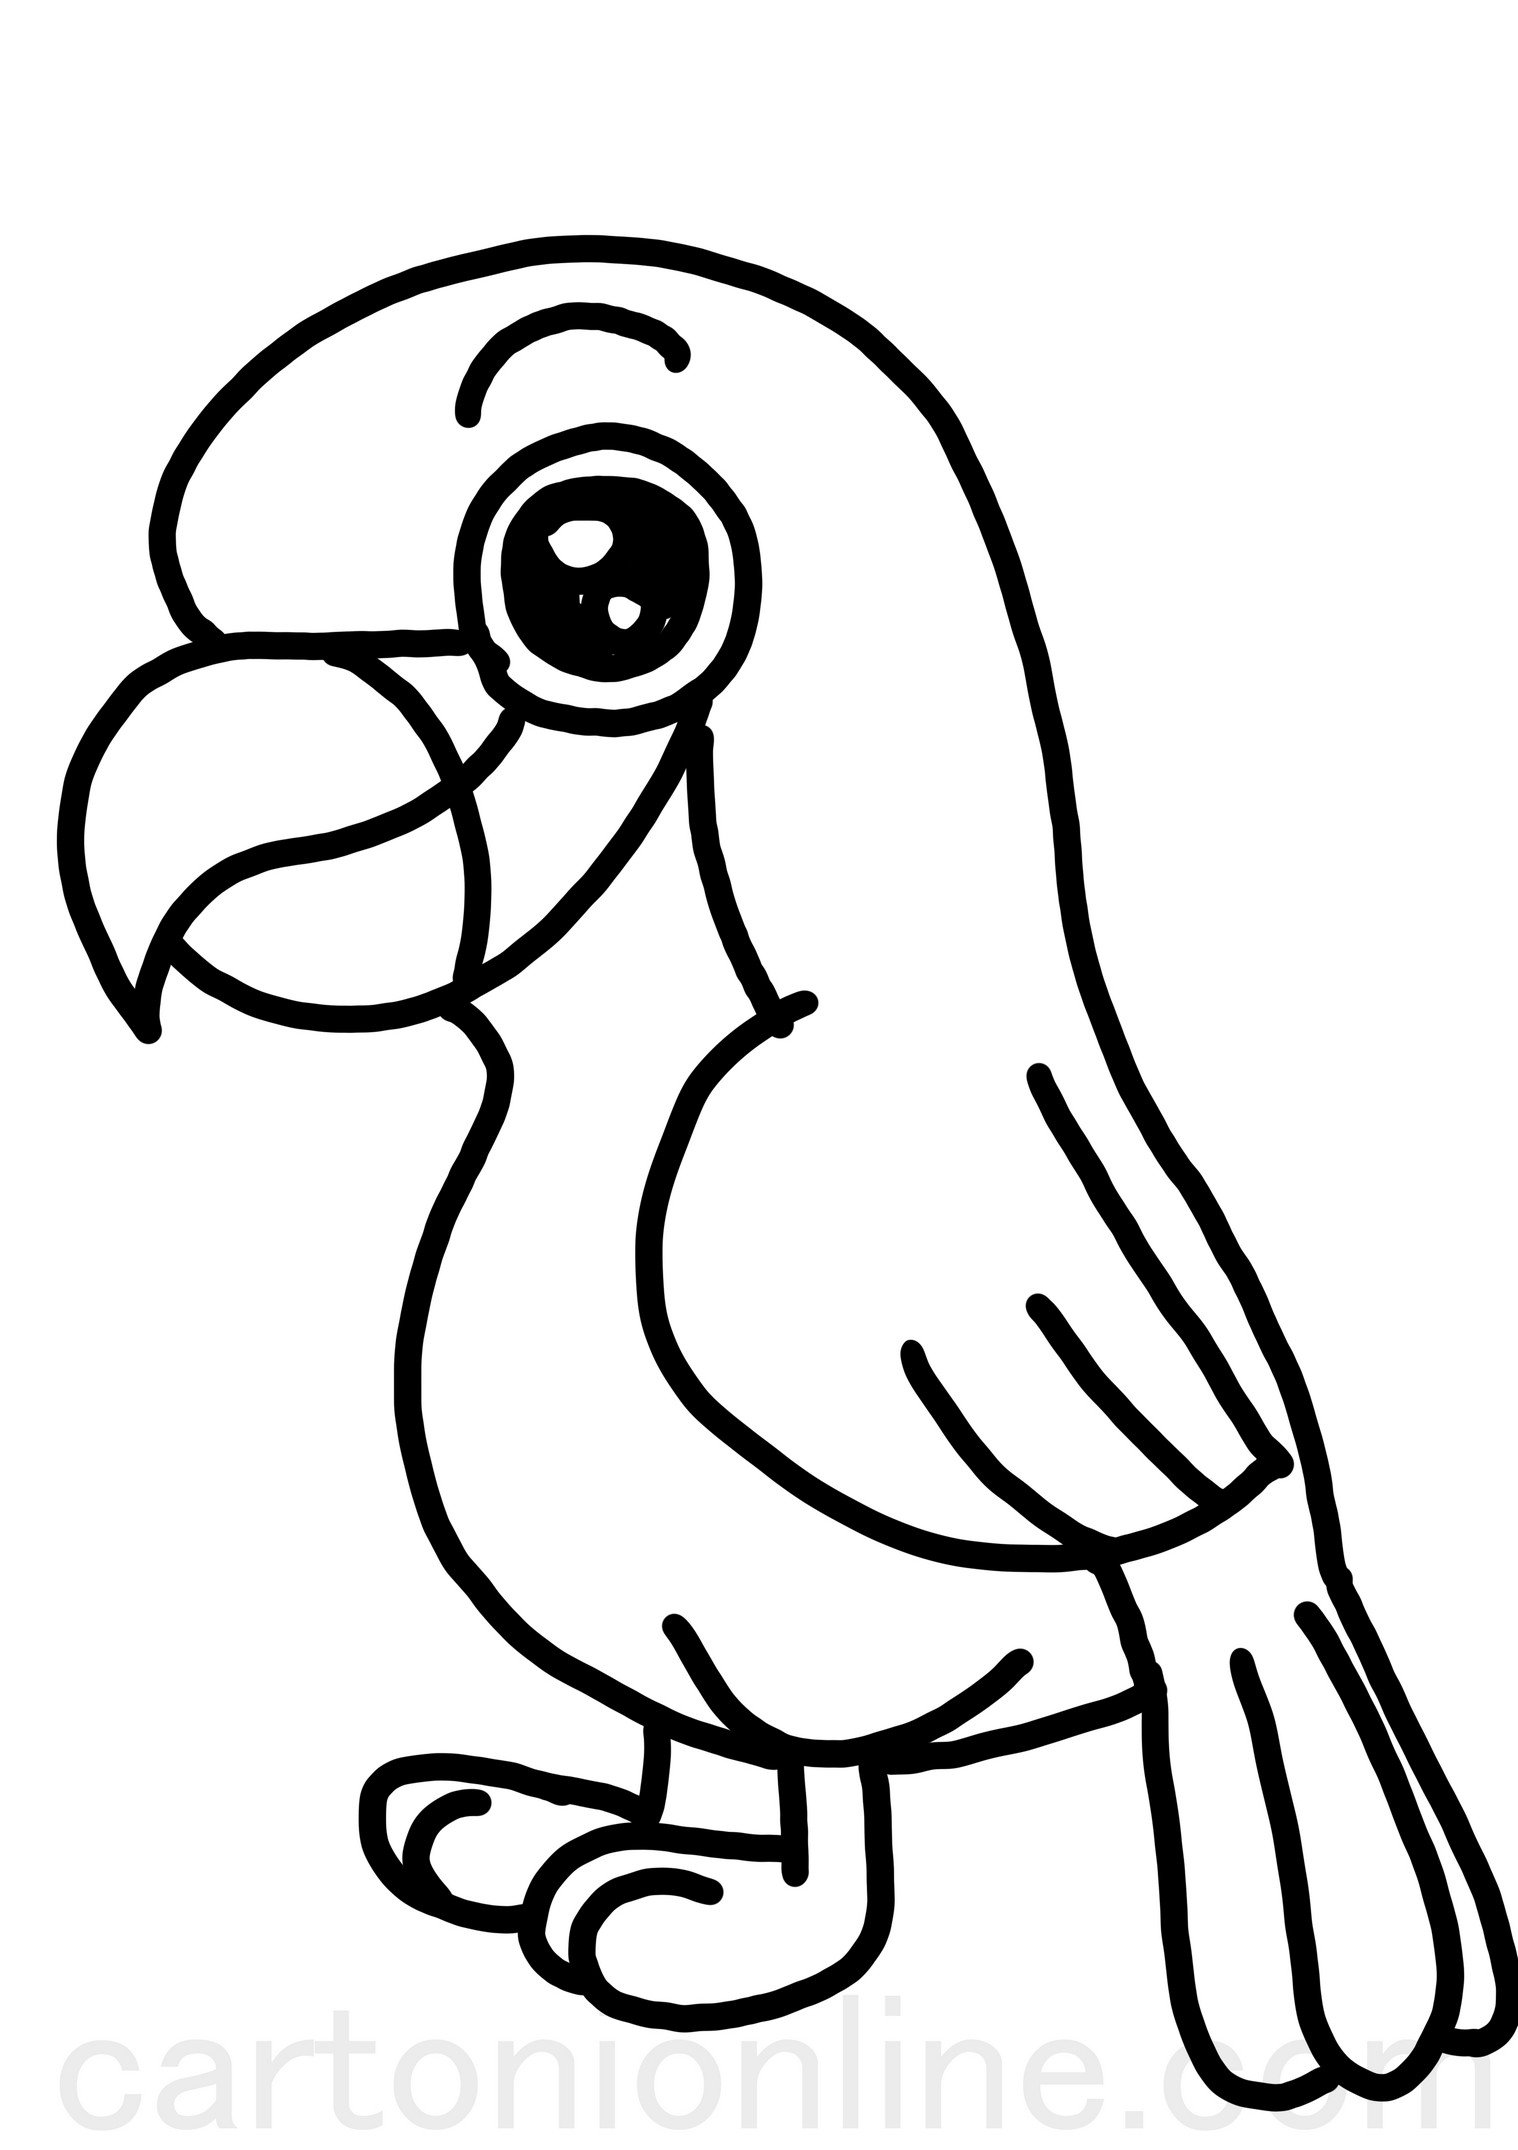 Disegno di pappagallo ara realistico da colorare